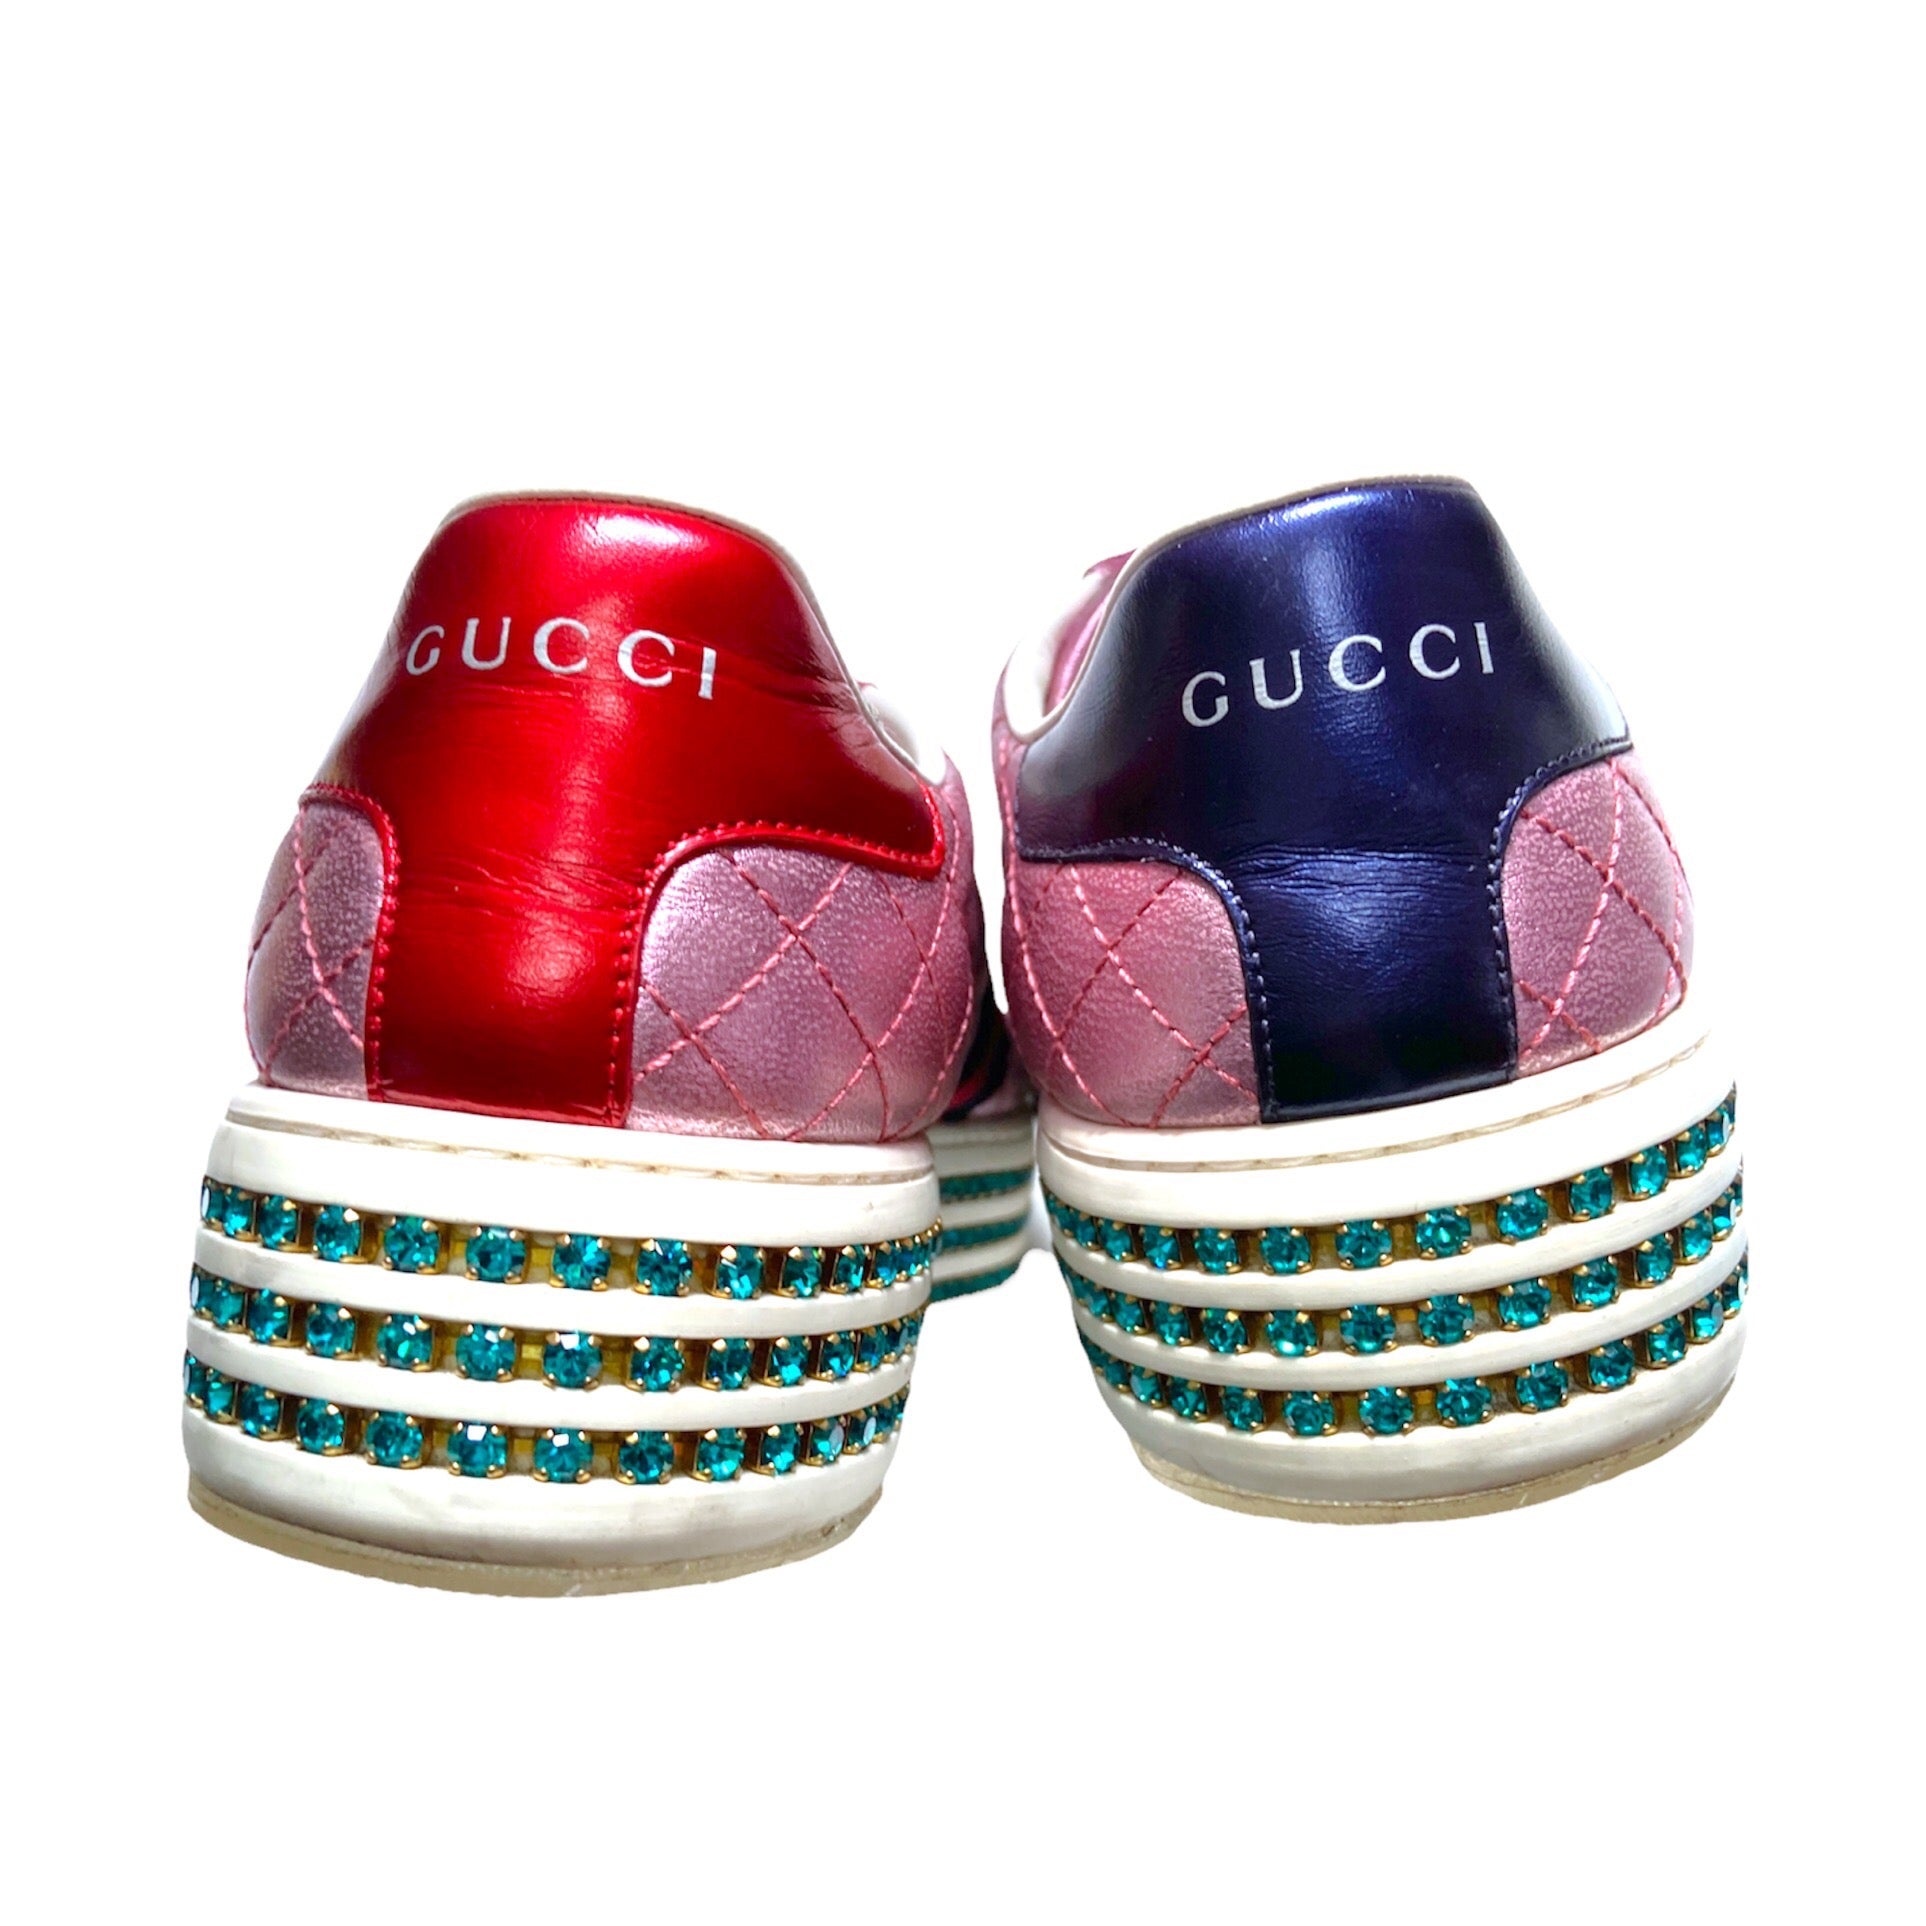 Gucci Swarovski crystal embellished pink platform ace sneaker 37.5 - 4